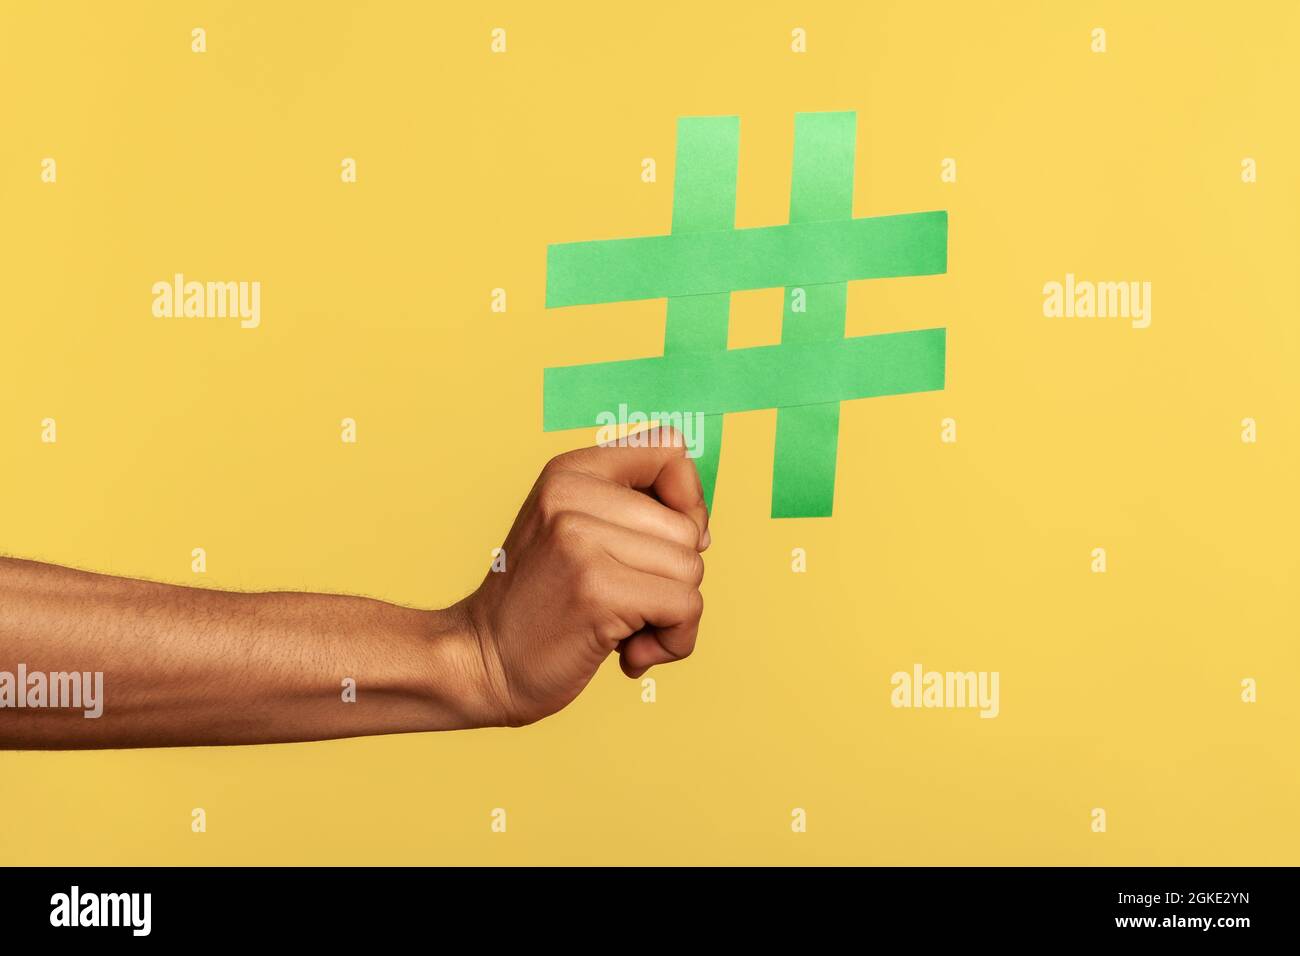 Concept de médias sociaux. Gros plan de main humaine tenant et montrant grand signe vert hashtag, copyspace. Studio d'intérieur isolé sur fond jaune Banque D'Images